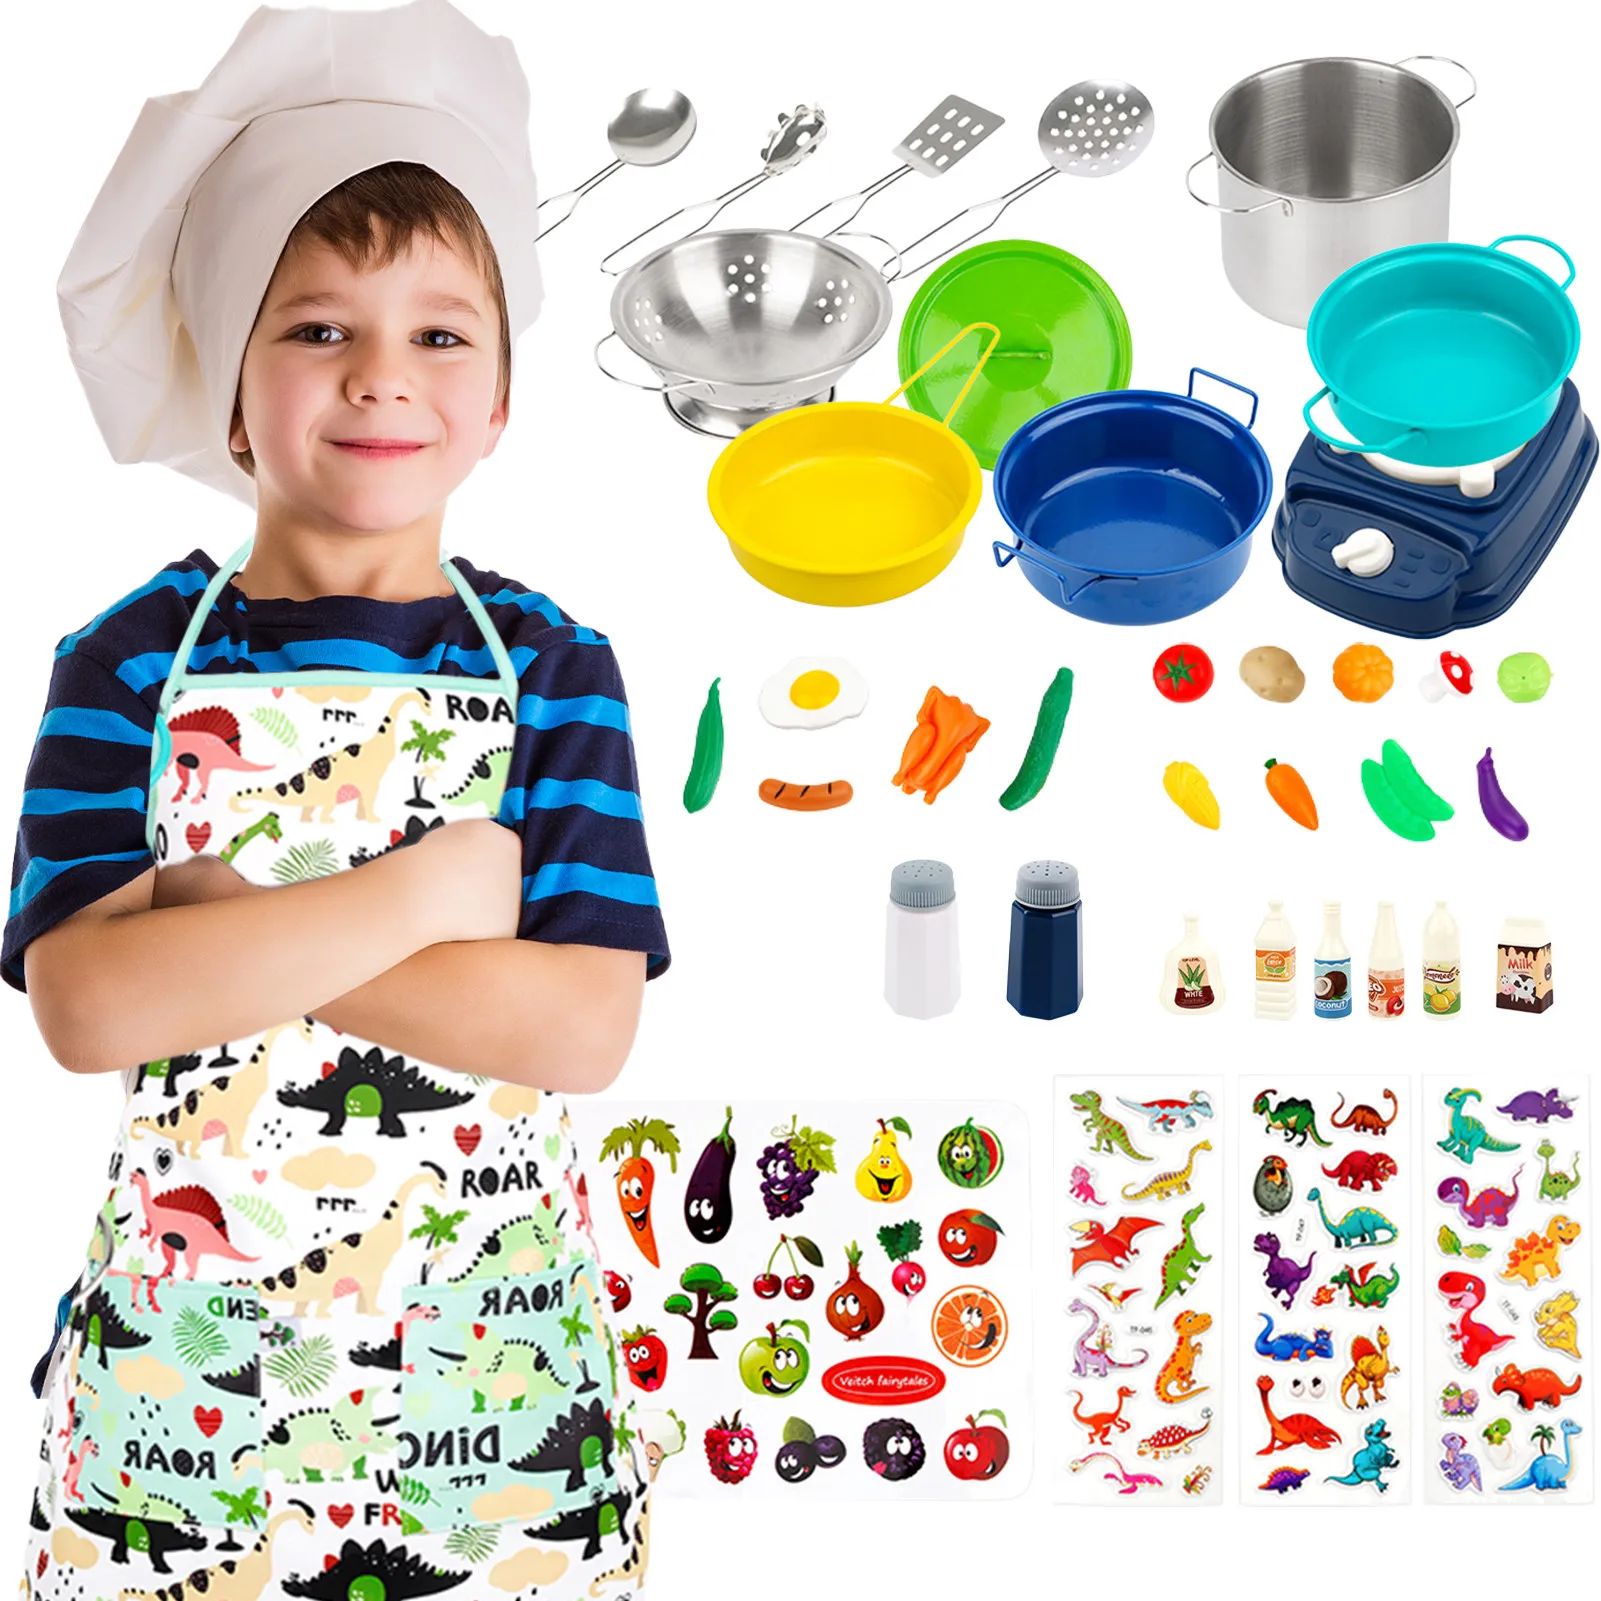 

Детский кулинарный набор, детский кухонный игровой набор, наборы кастрюль и сковородок для детей, для маленьких девочек и мальчиков в возра...